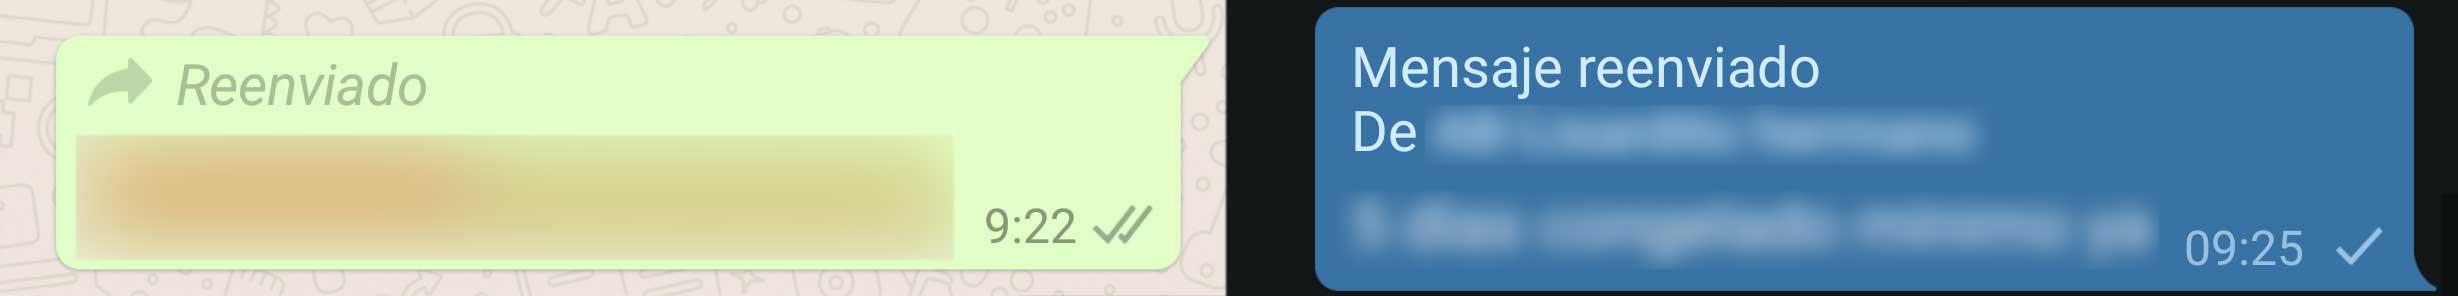 reenviado whatsapp vs telegram